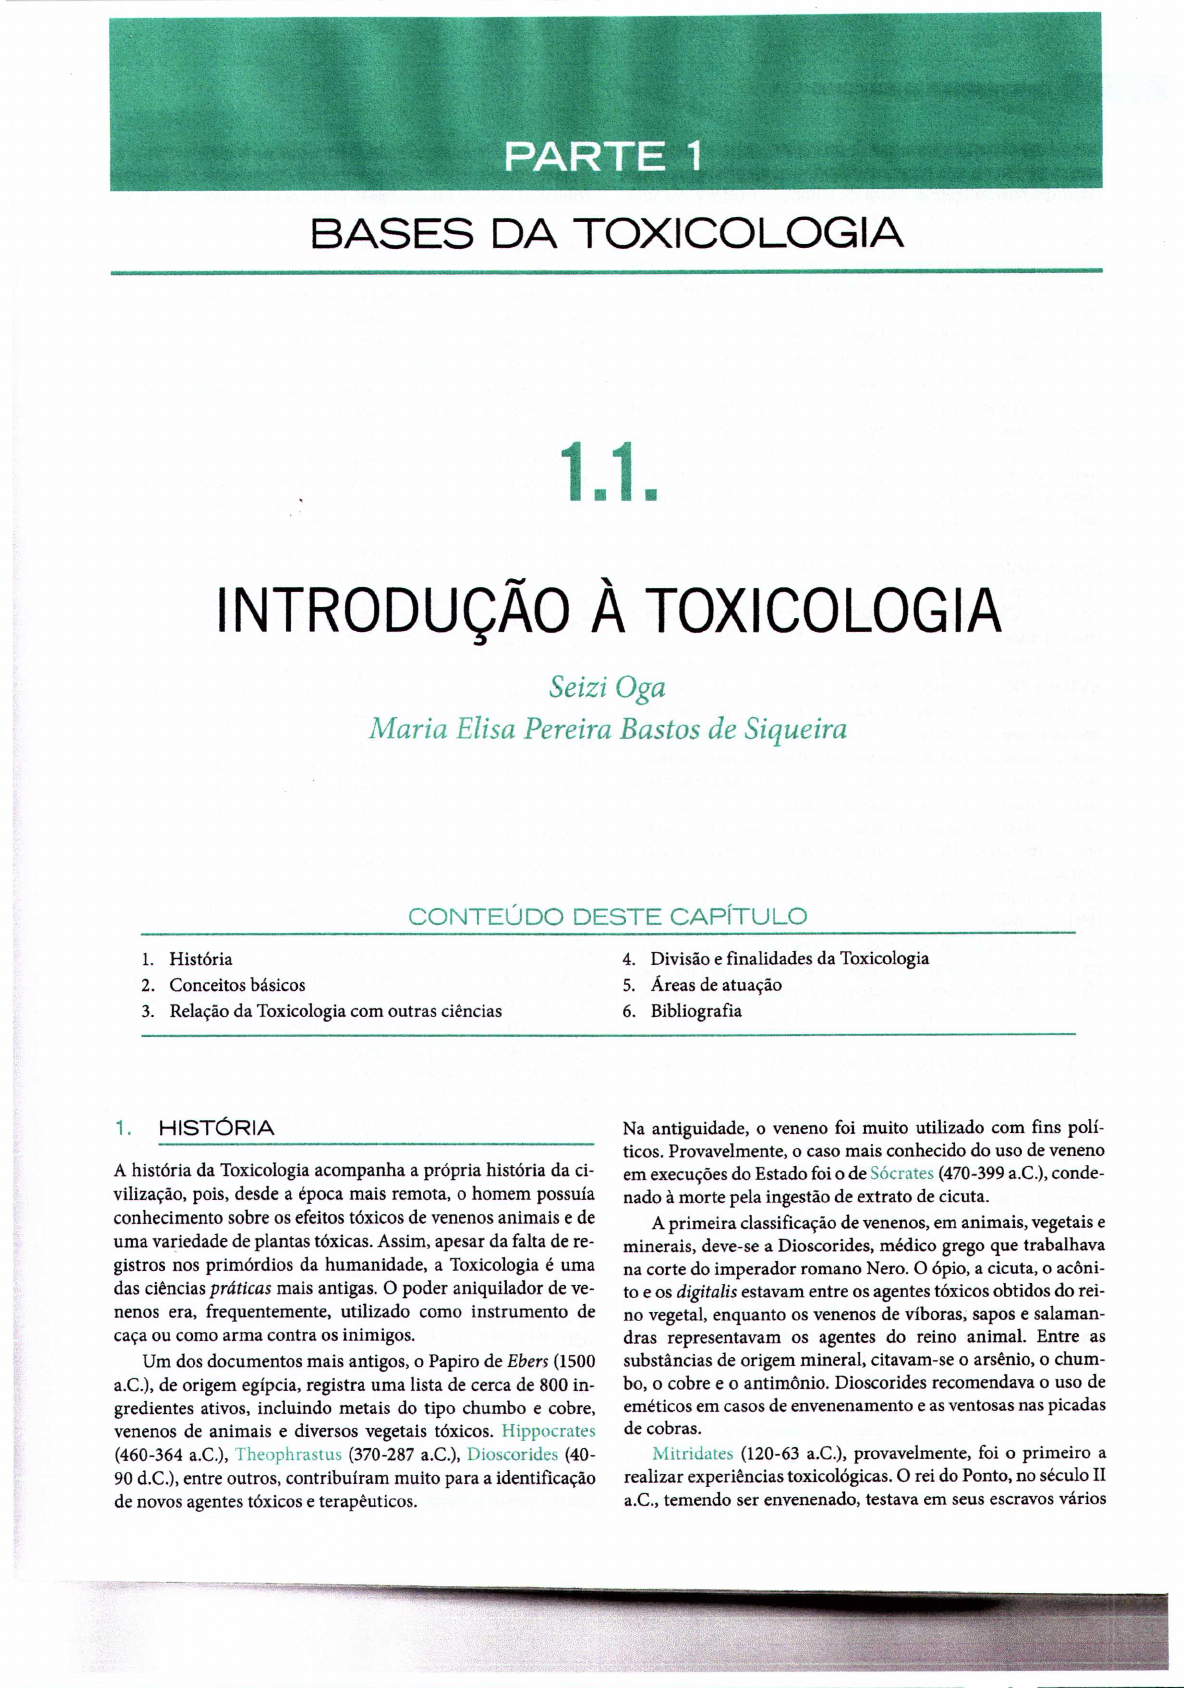 Toxicologia: conceitos, especialidades e aplicações